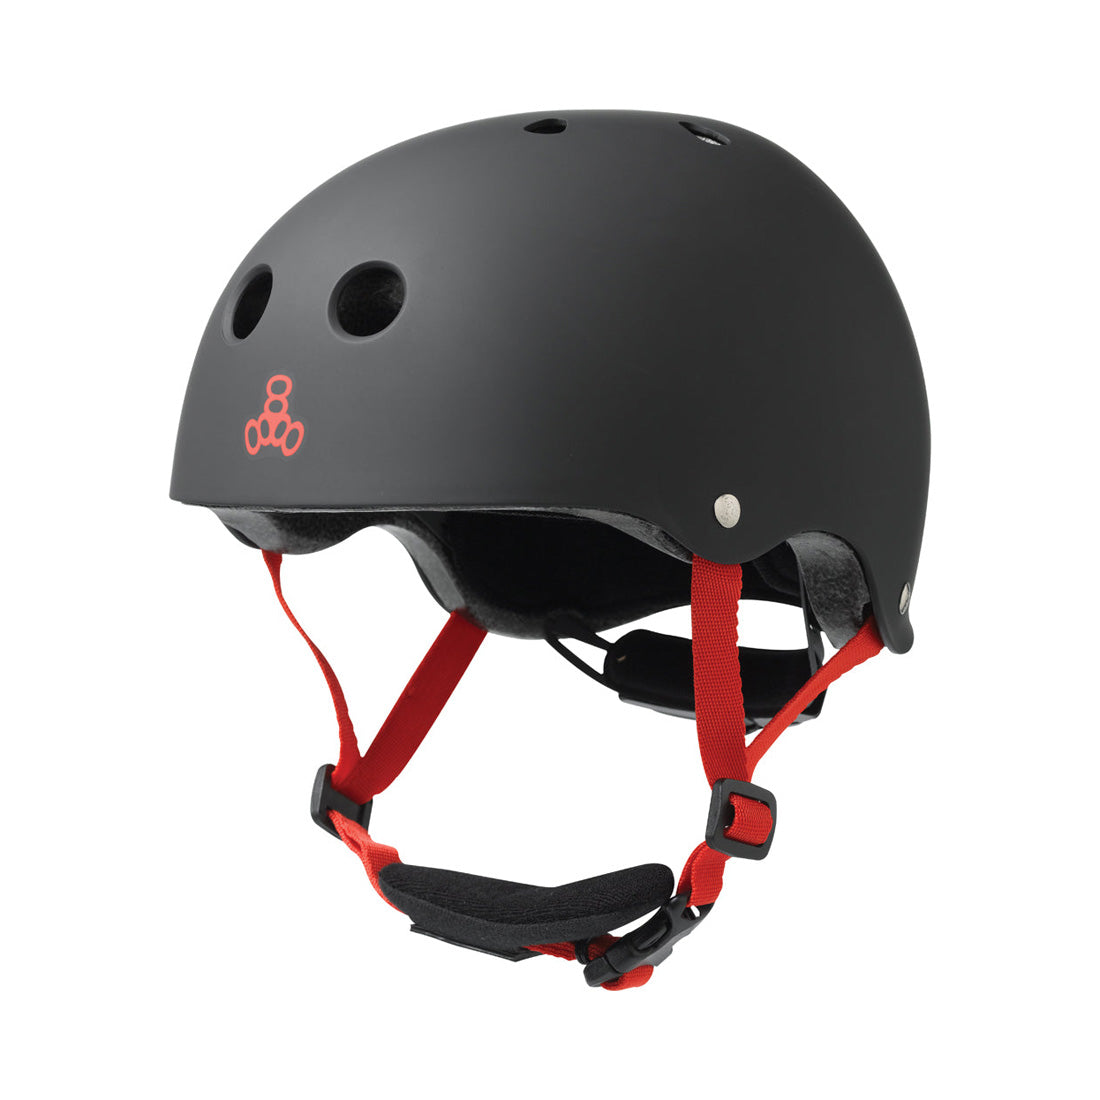 Triple 8 LIL8 Youth Bike Helmet - Black Rubber Helmets